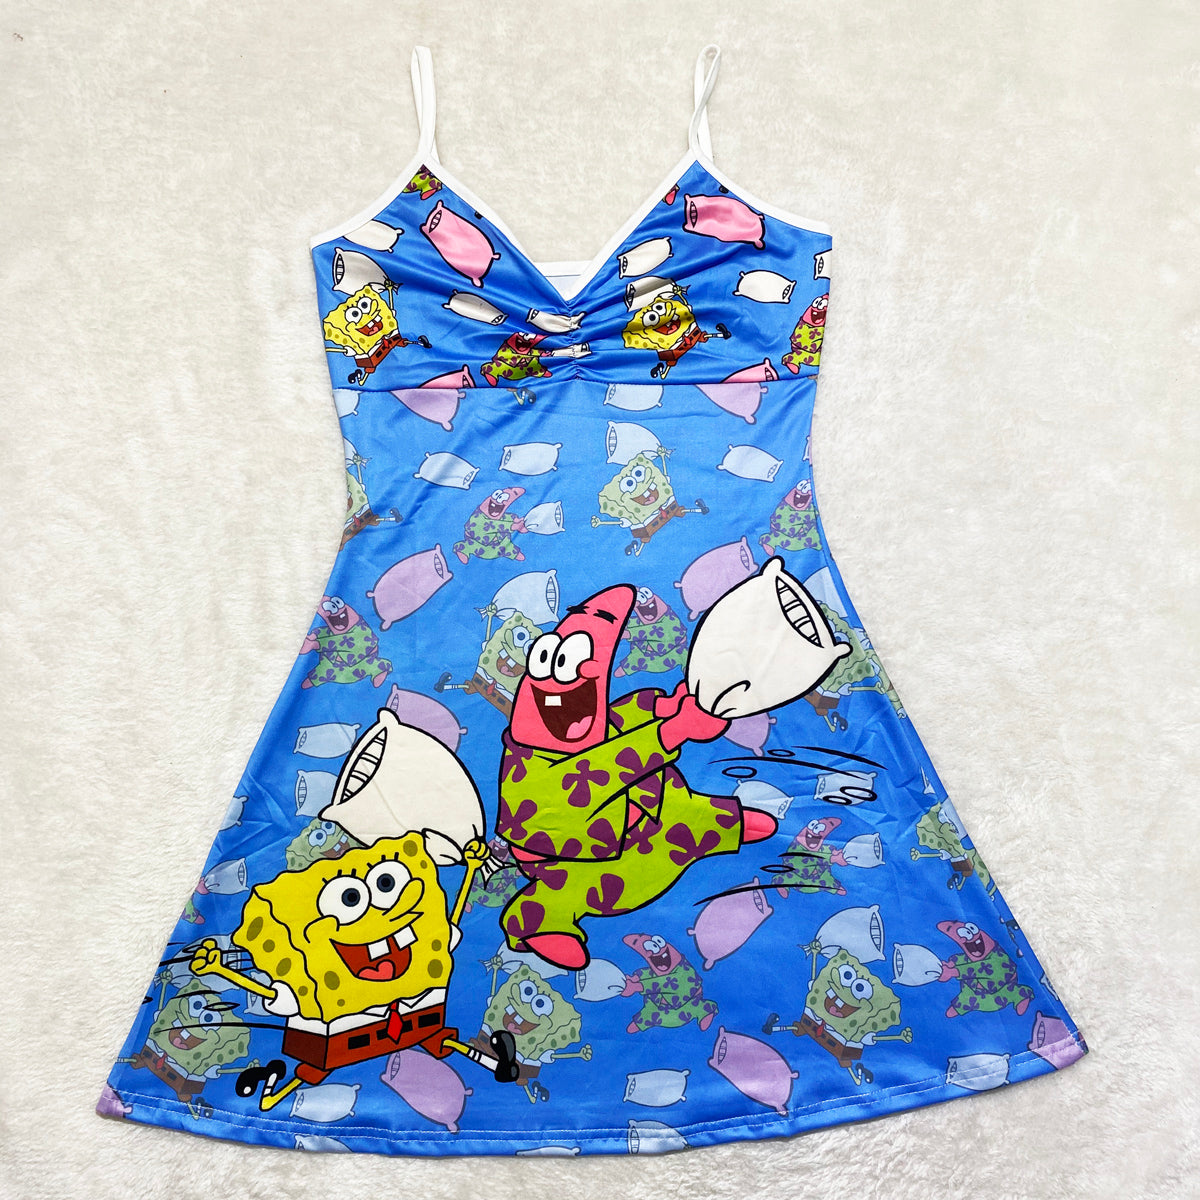 SpongeBob & Patrick Pajamas